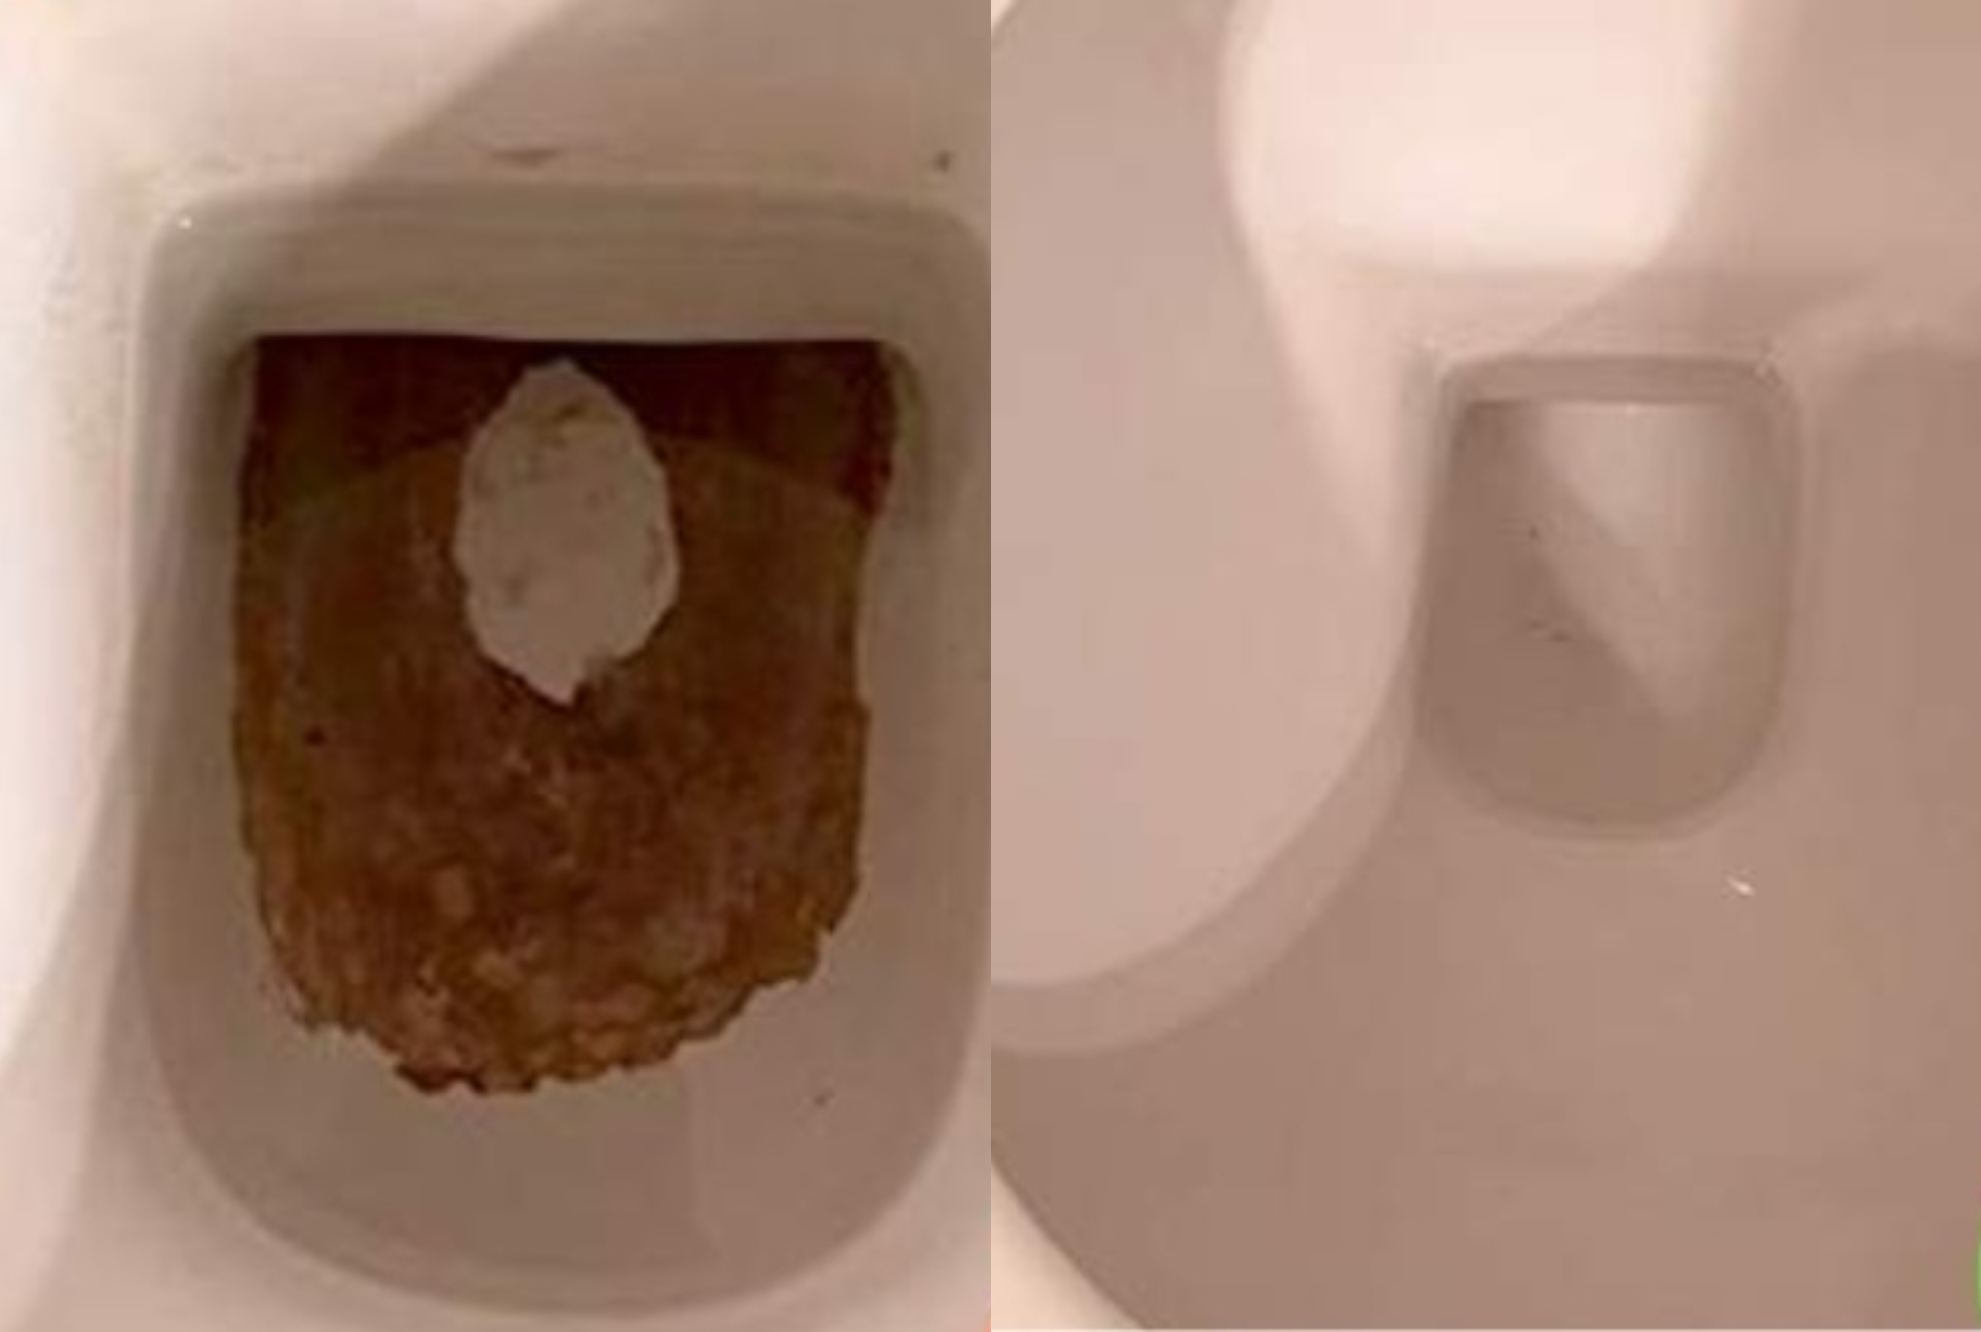 Πουρί μαυρίλες και καφέ σημάδια στον πάτο της τουαλέτας: